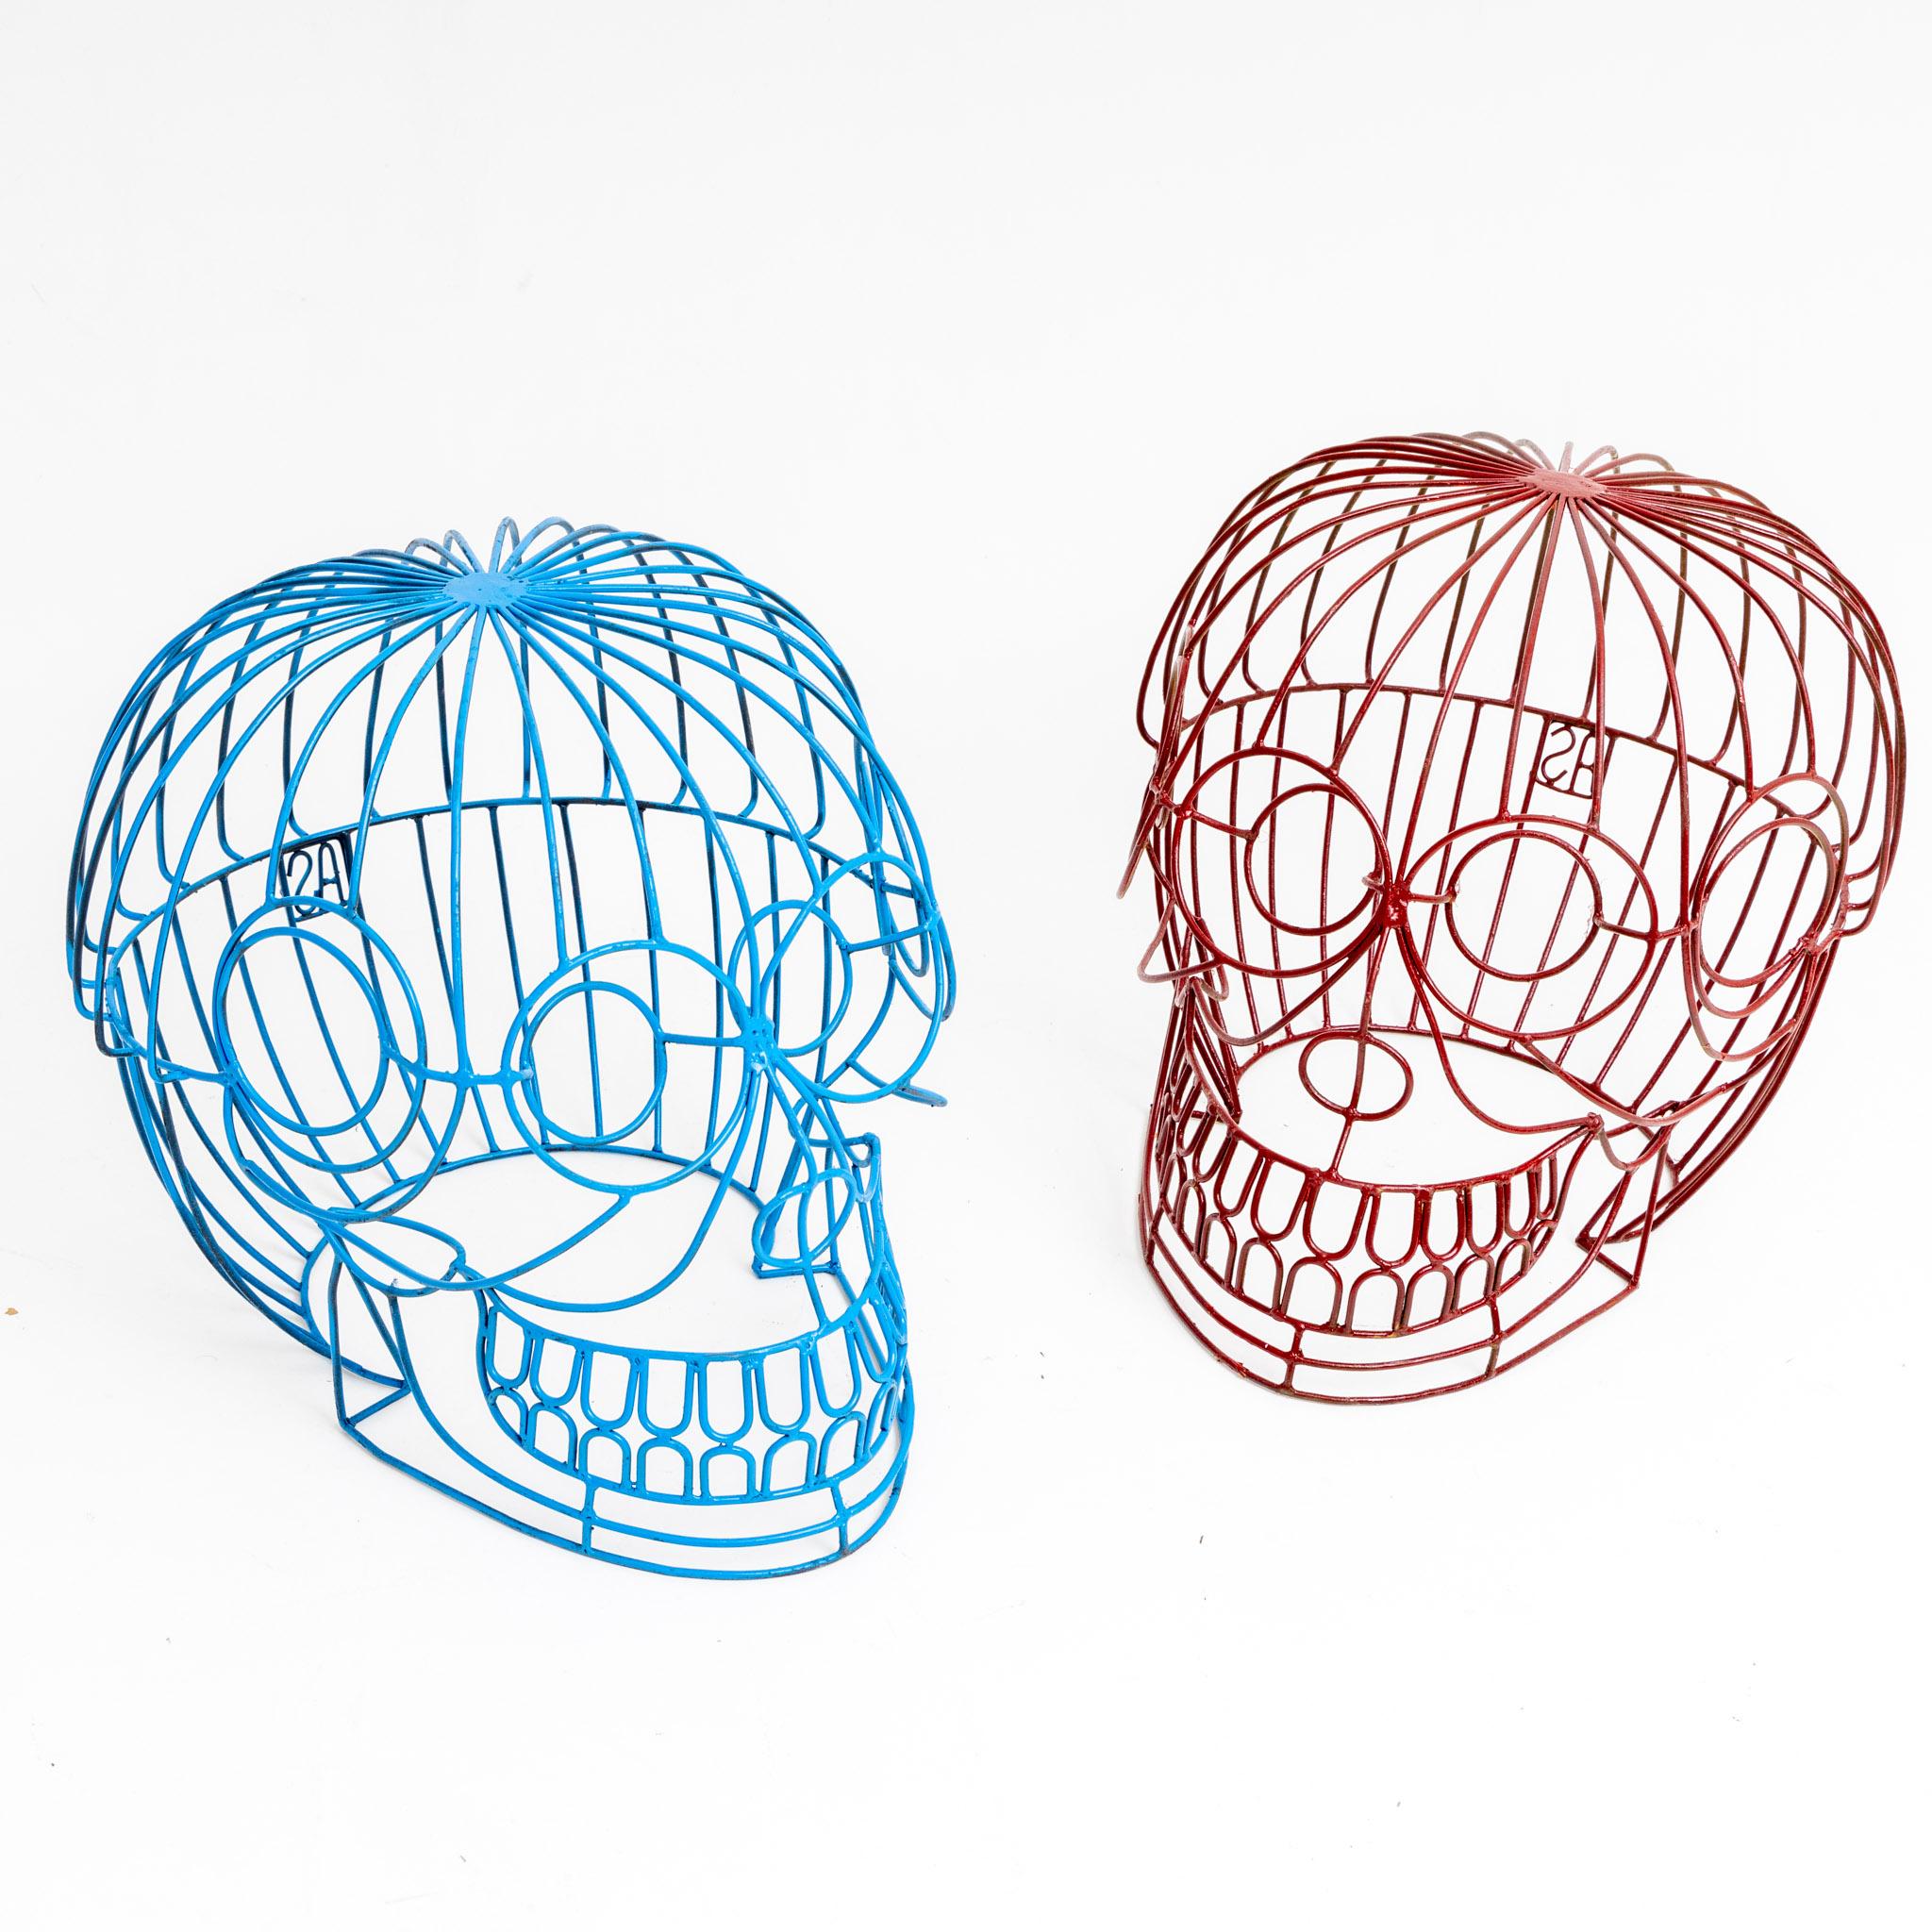 Paire de tabourets par Anacleto Spazzapan en forme de crânes faits de tiges de métal soudées individuellement et peintes respectivement en bleu et rouge. Monogramme AS au dos.
En tant que designer, Anacleto Spazzapan (né en 1943) se considère au